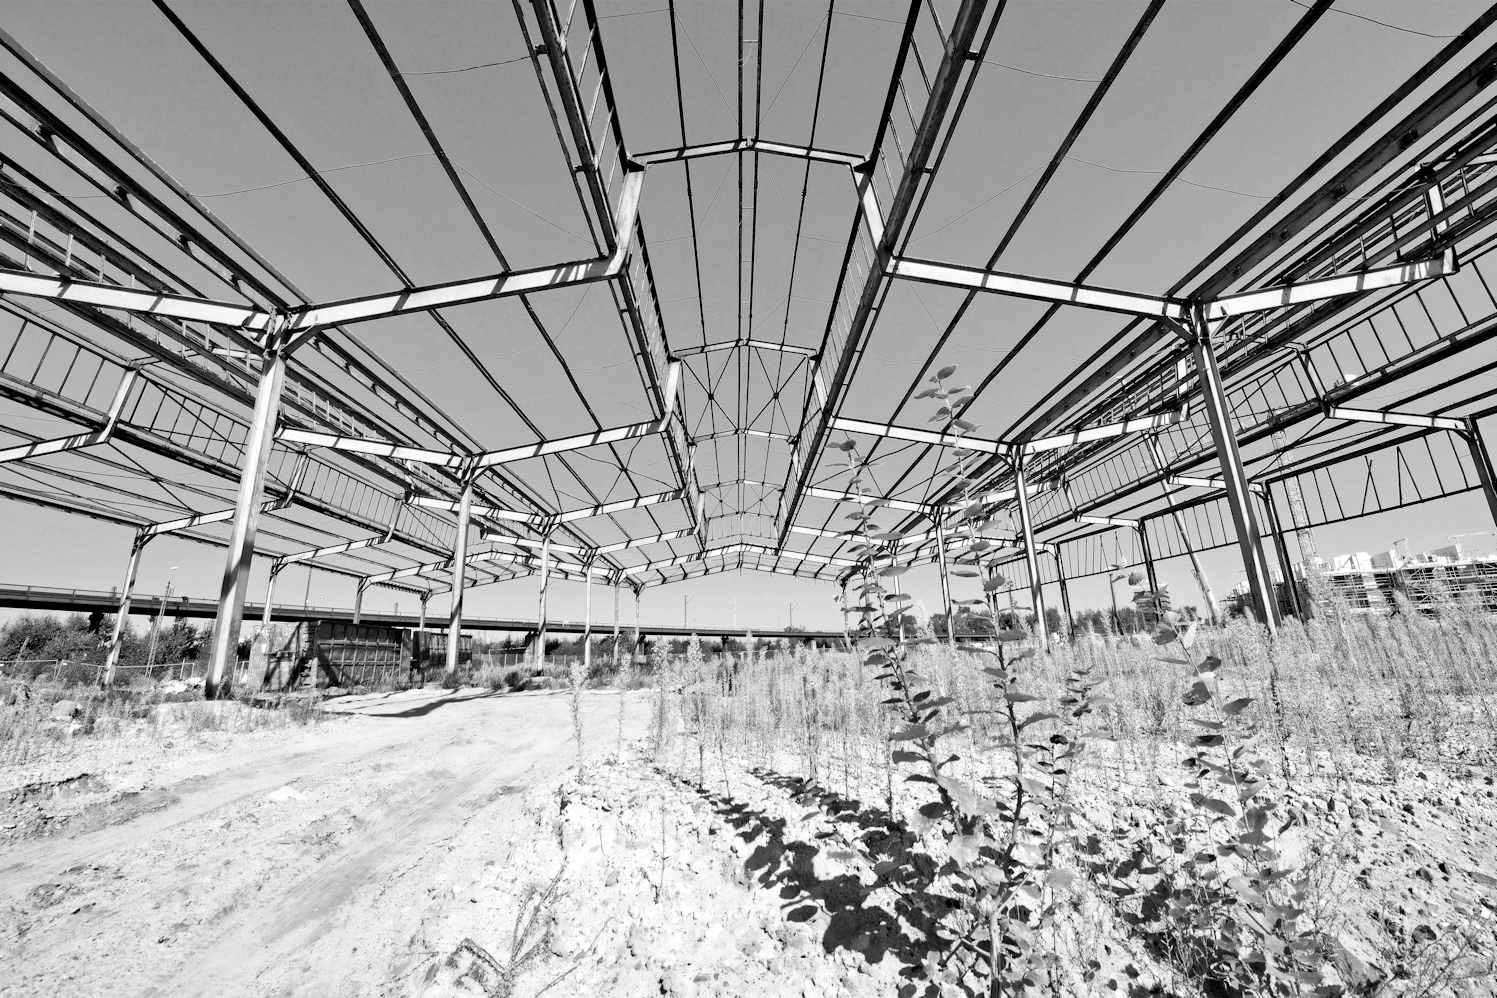 2378 Eisenkonstruktion - Dach einer ehemaligen Güterhalle. | Altonaer Bahnhof - ehem. Güterbahnhof Harkortstrasse